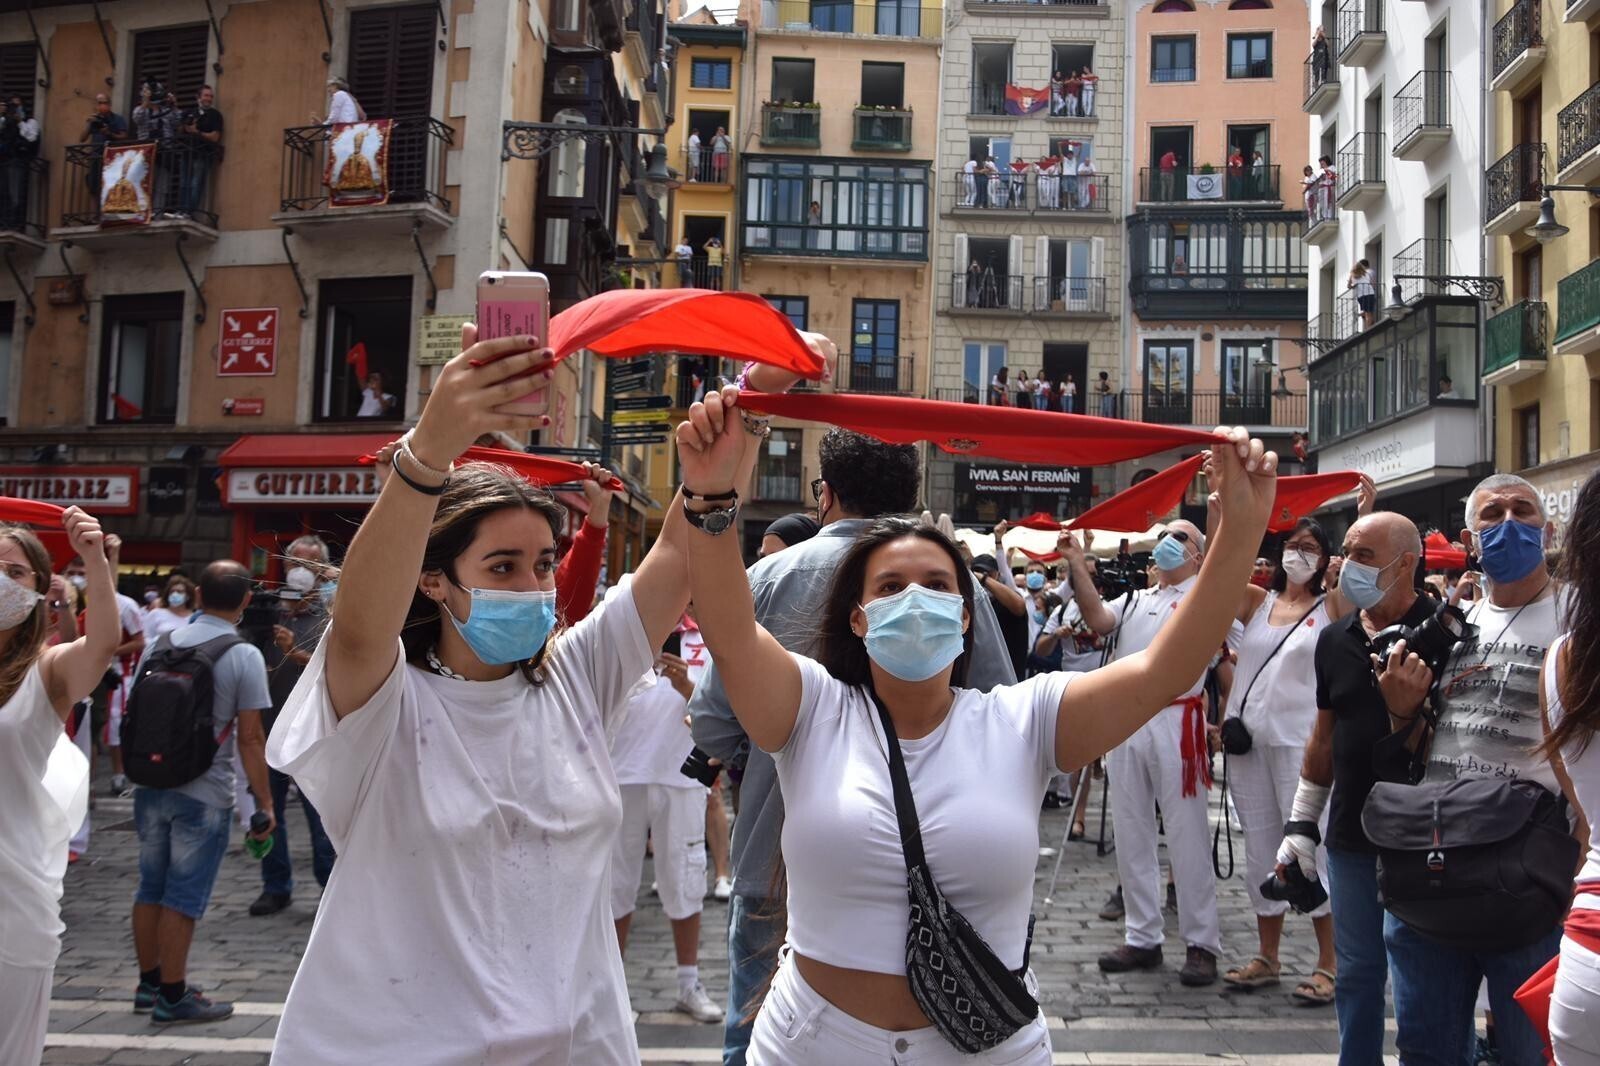 Lunes 6 de julio de 2020: los “No Sanfermines” y #LosViviremos - Actualidad - Últimas noticias de Navarra de hoy | Navarra digital